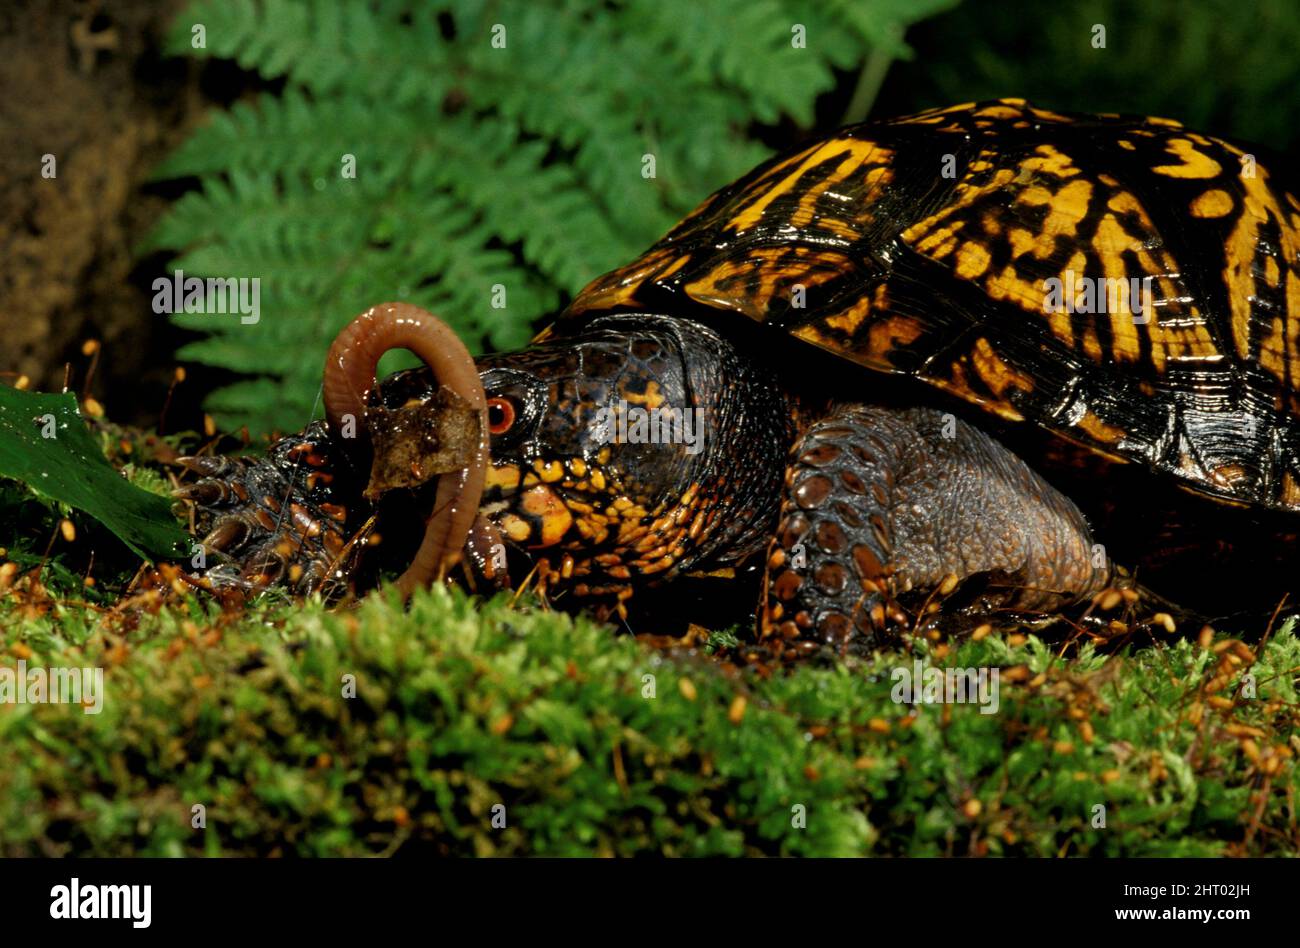 Eastern box turtle (Terrapene carolina carolina), eating a worm. Pennsylvania, USA Stock Photo